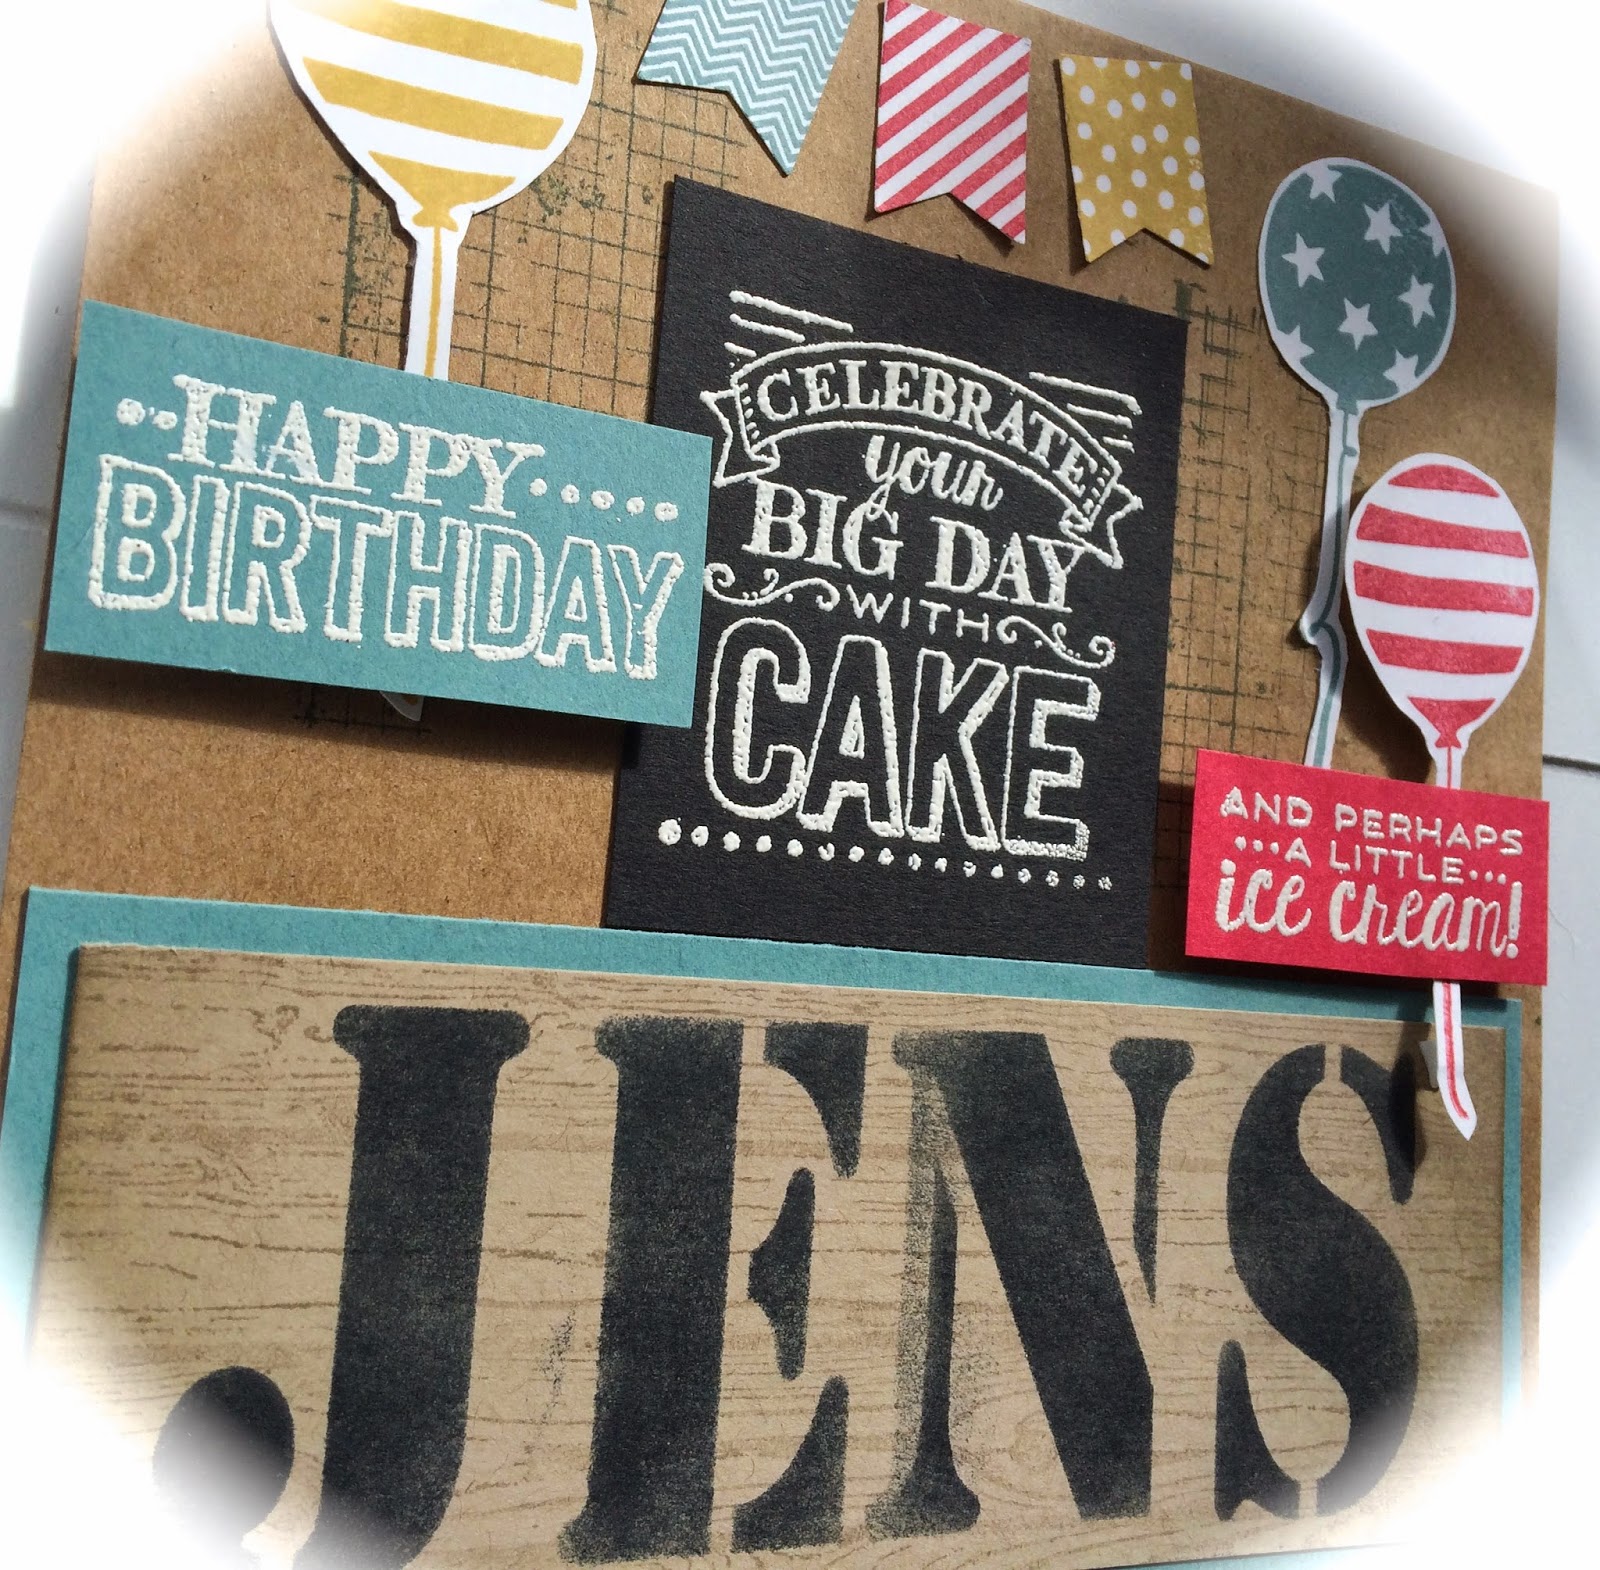 Happy Birthday Jens